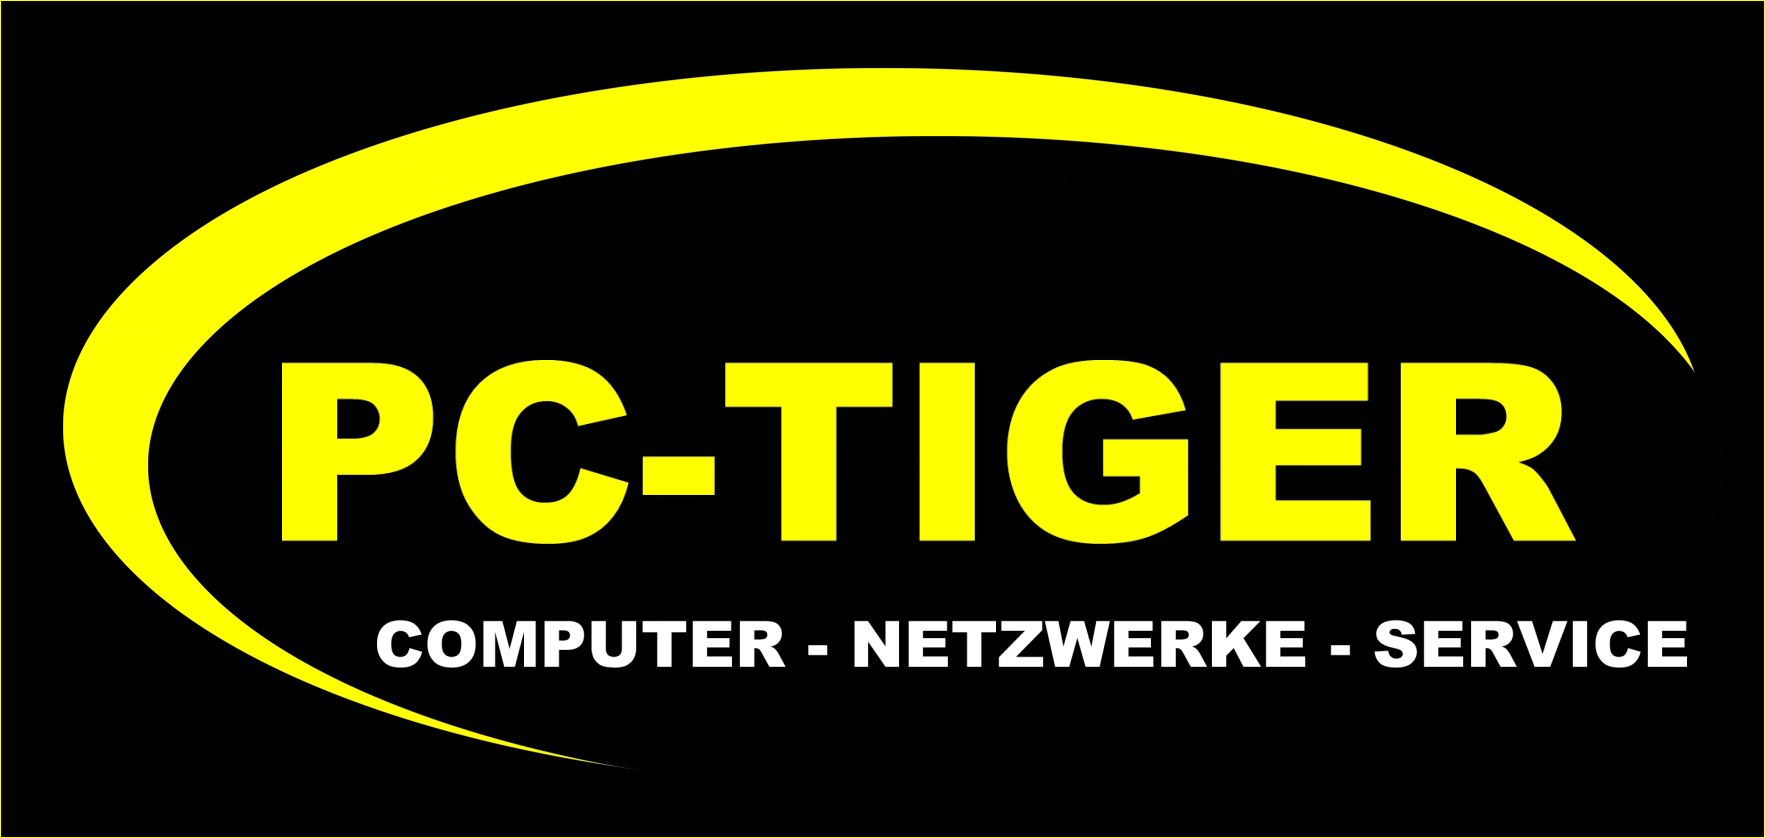 PC-TIGER …. seit mehr als 20 Jahren der IT Experte im Pinzgau